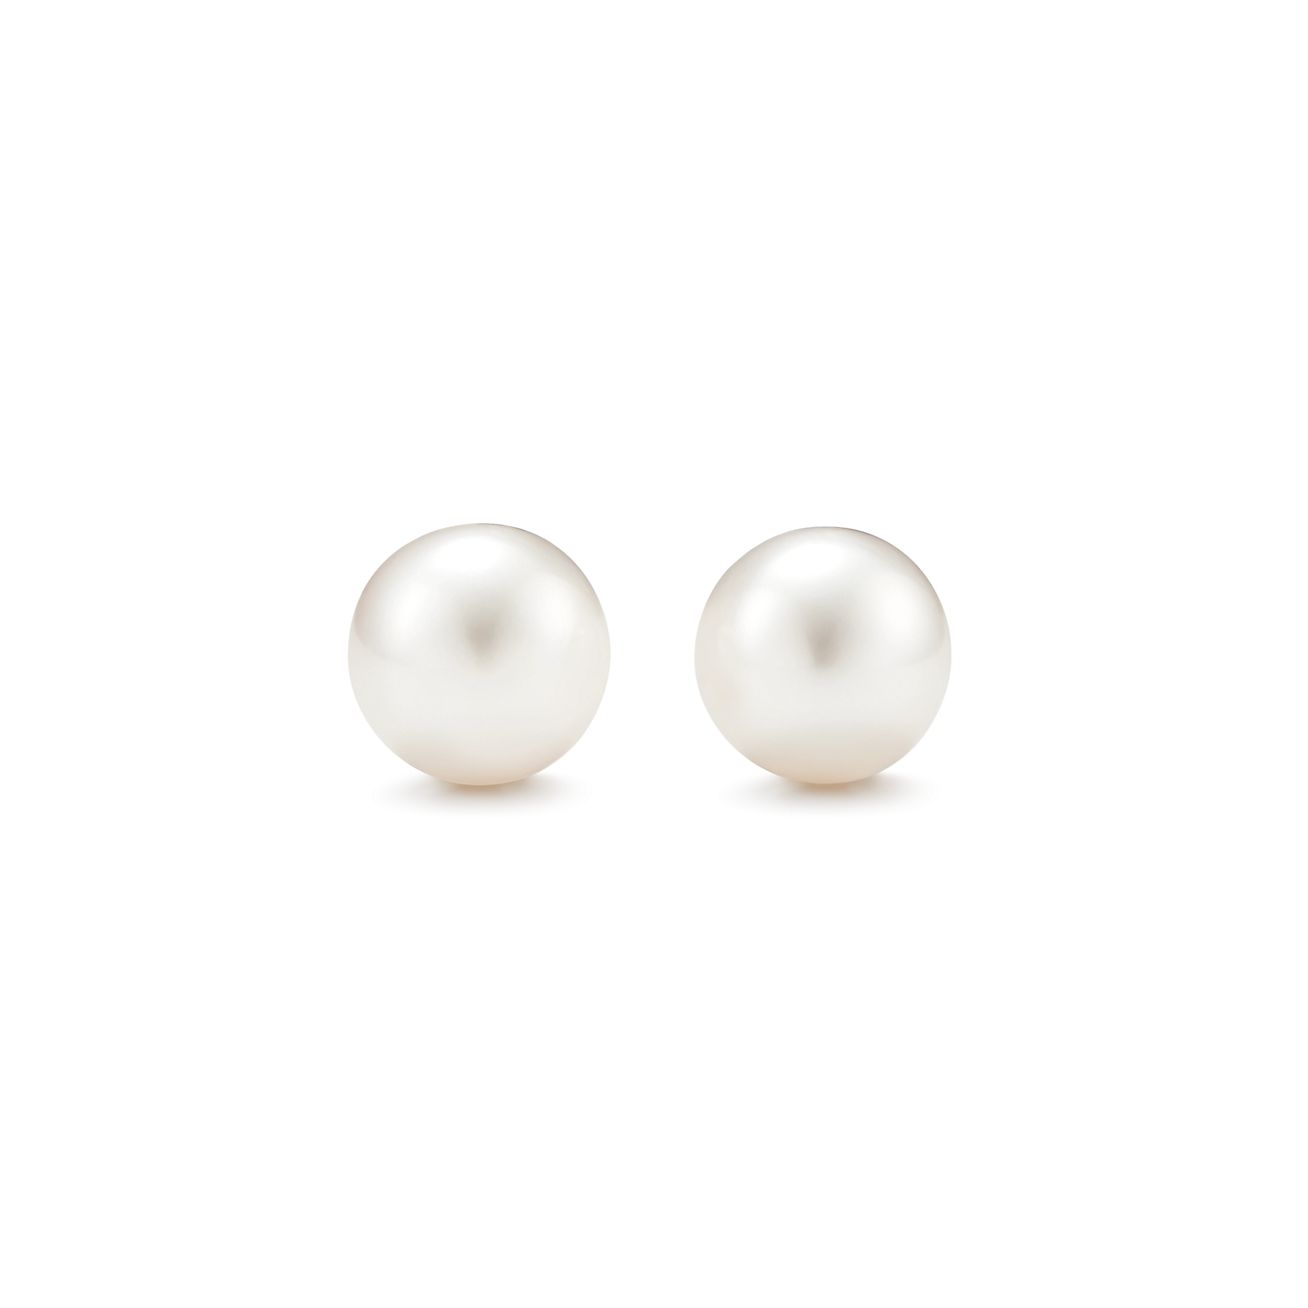 LE YI Freshwater Cultured Pearl Earrings for Women Sterling Silver Pearl Jewelry Women Earring Studs 